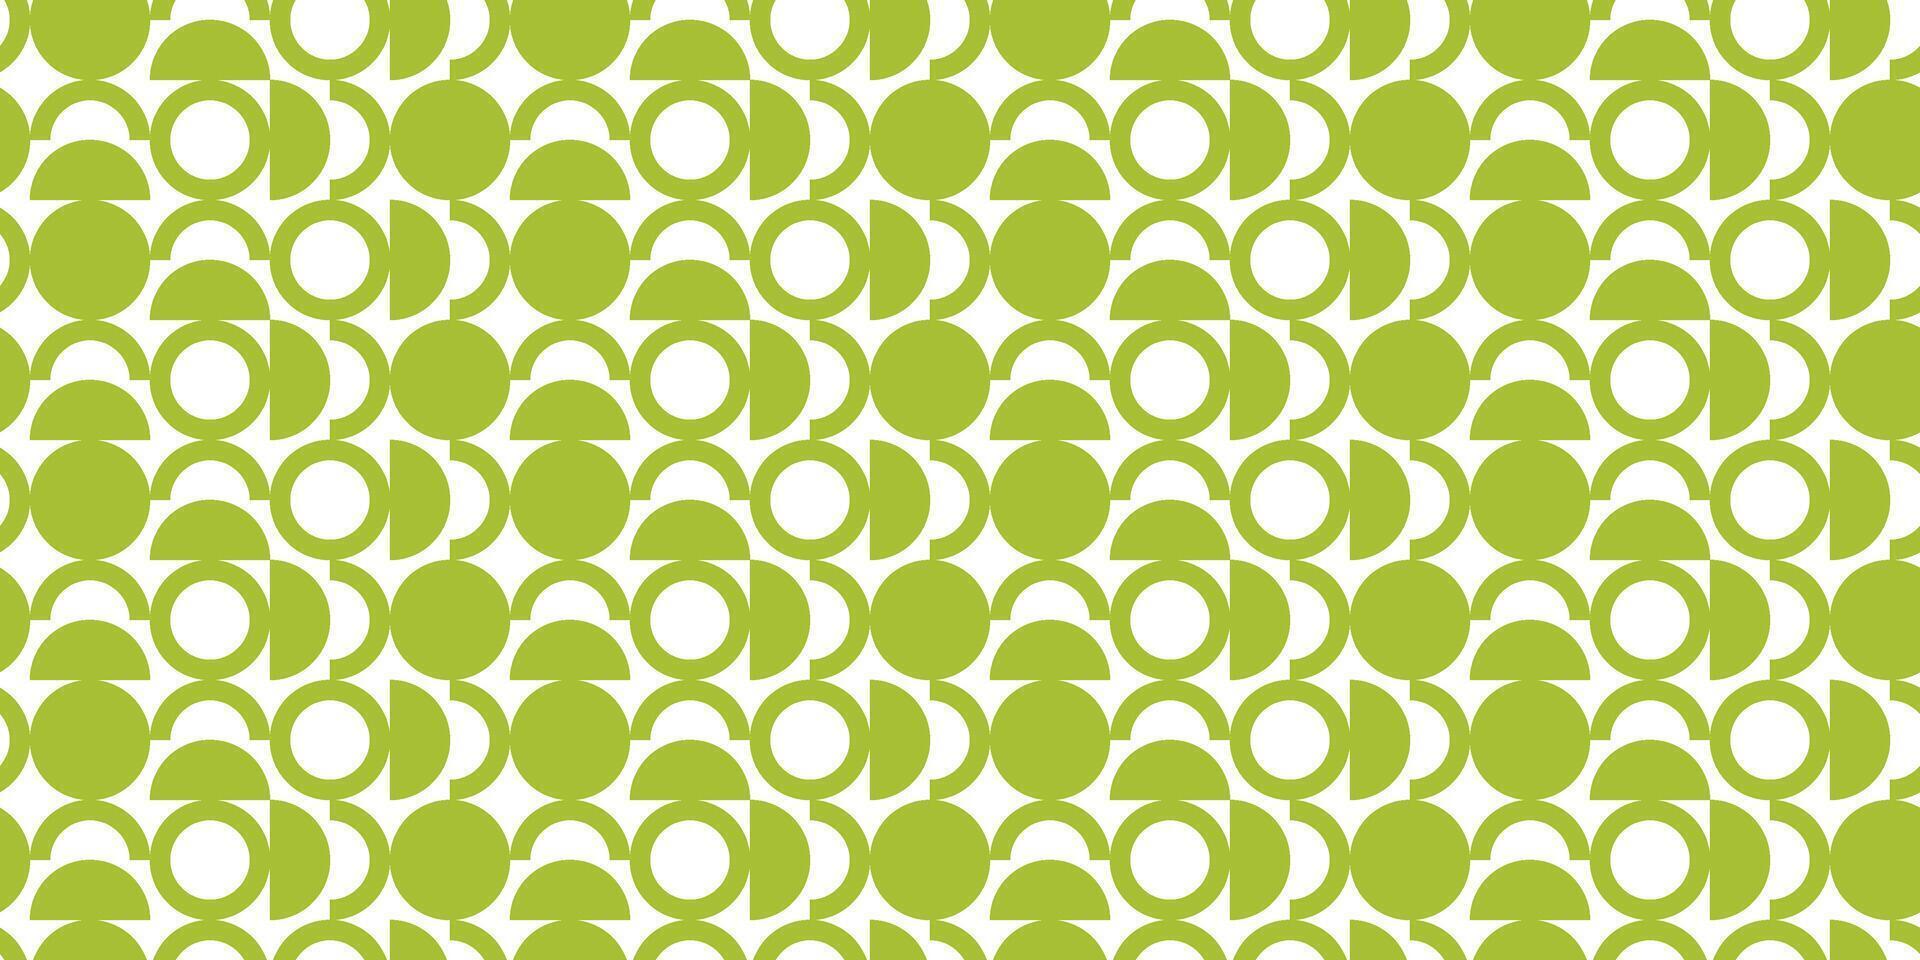 groen en wit achtergrond met cirkels vector